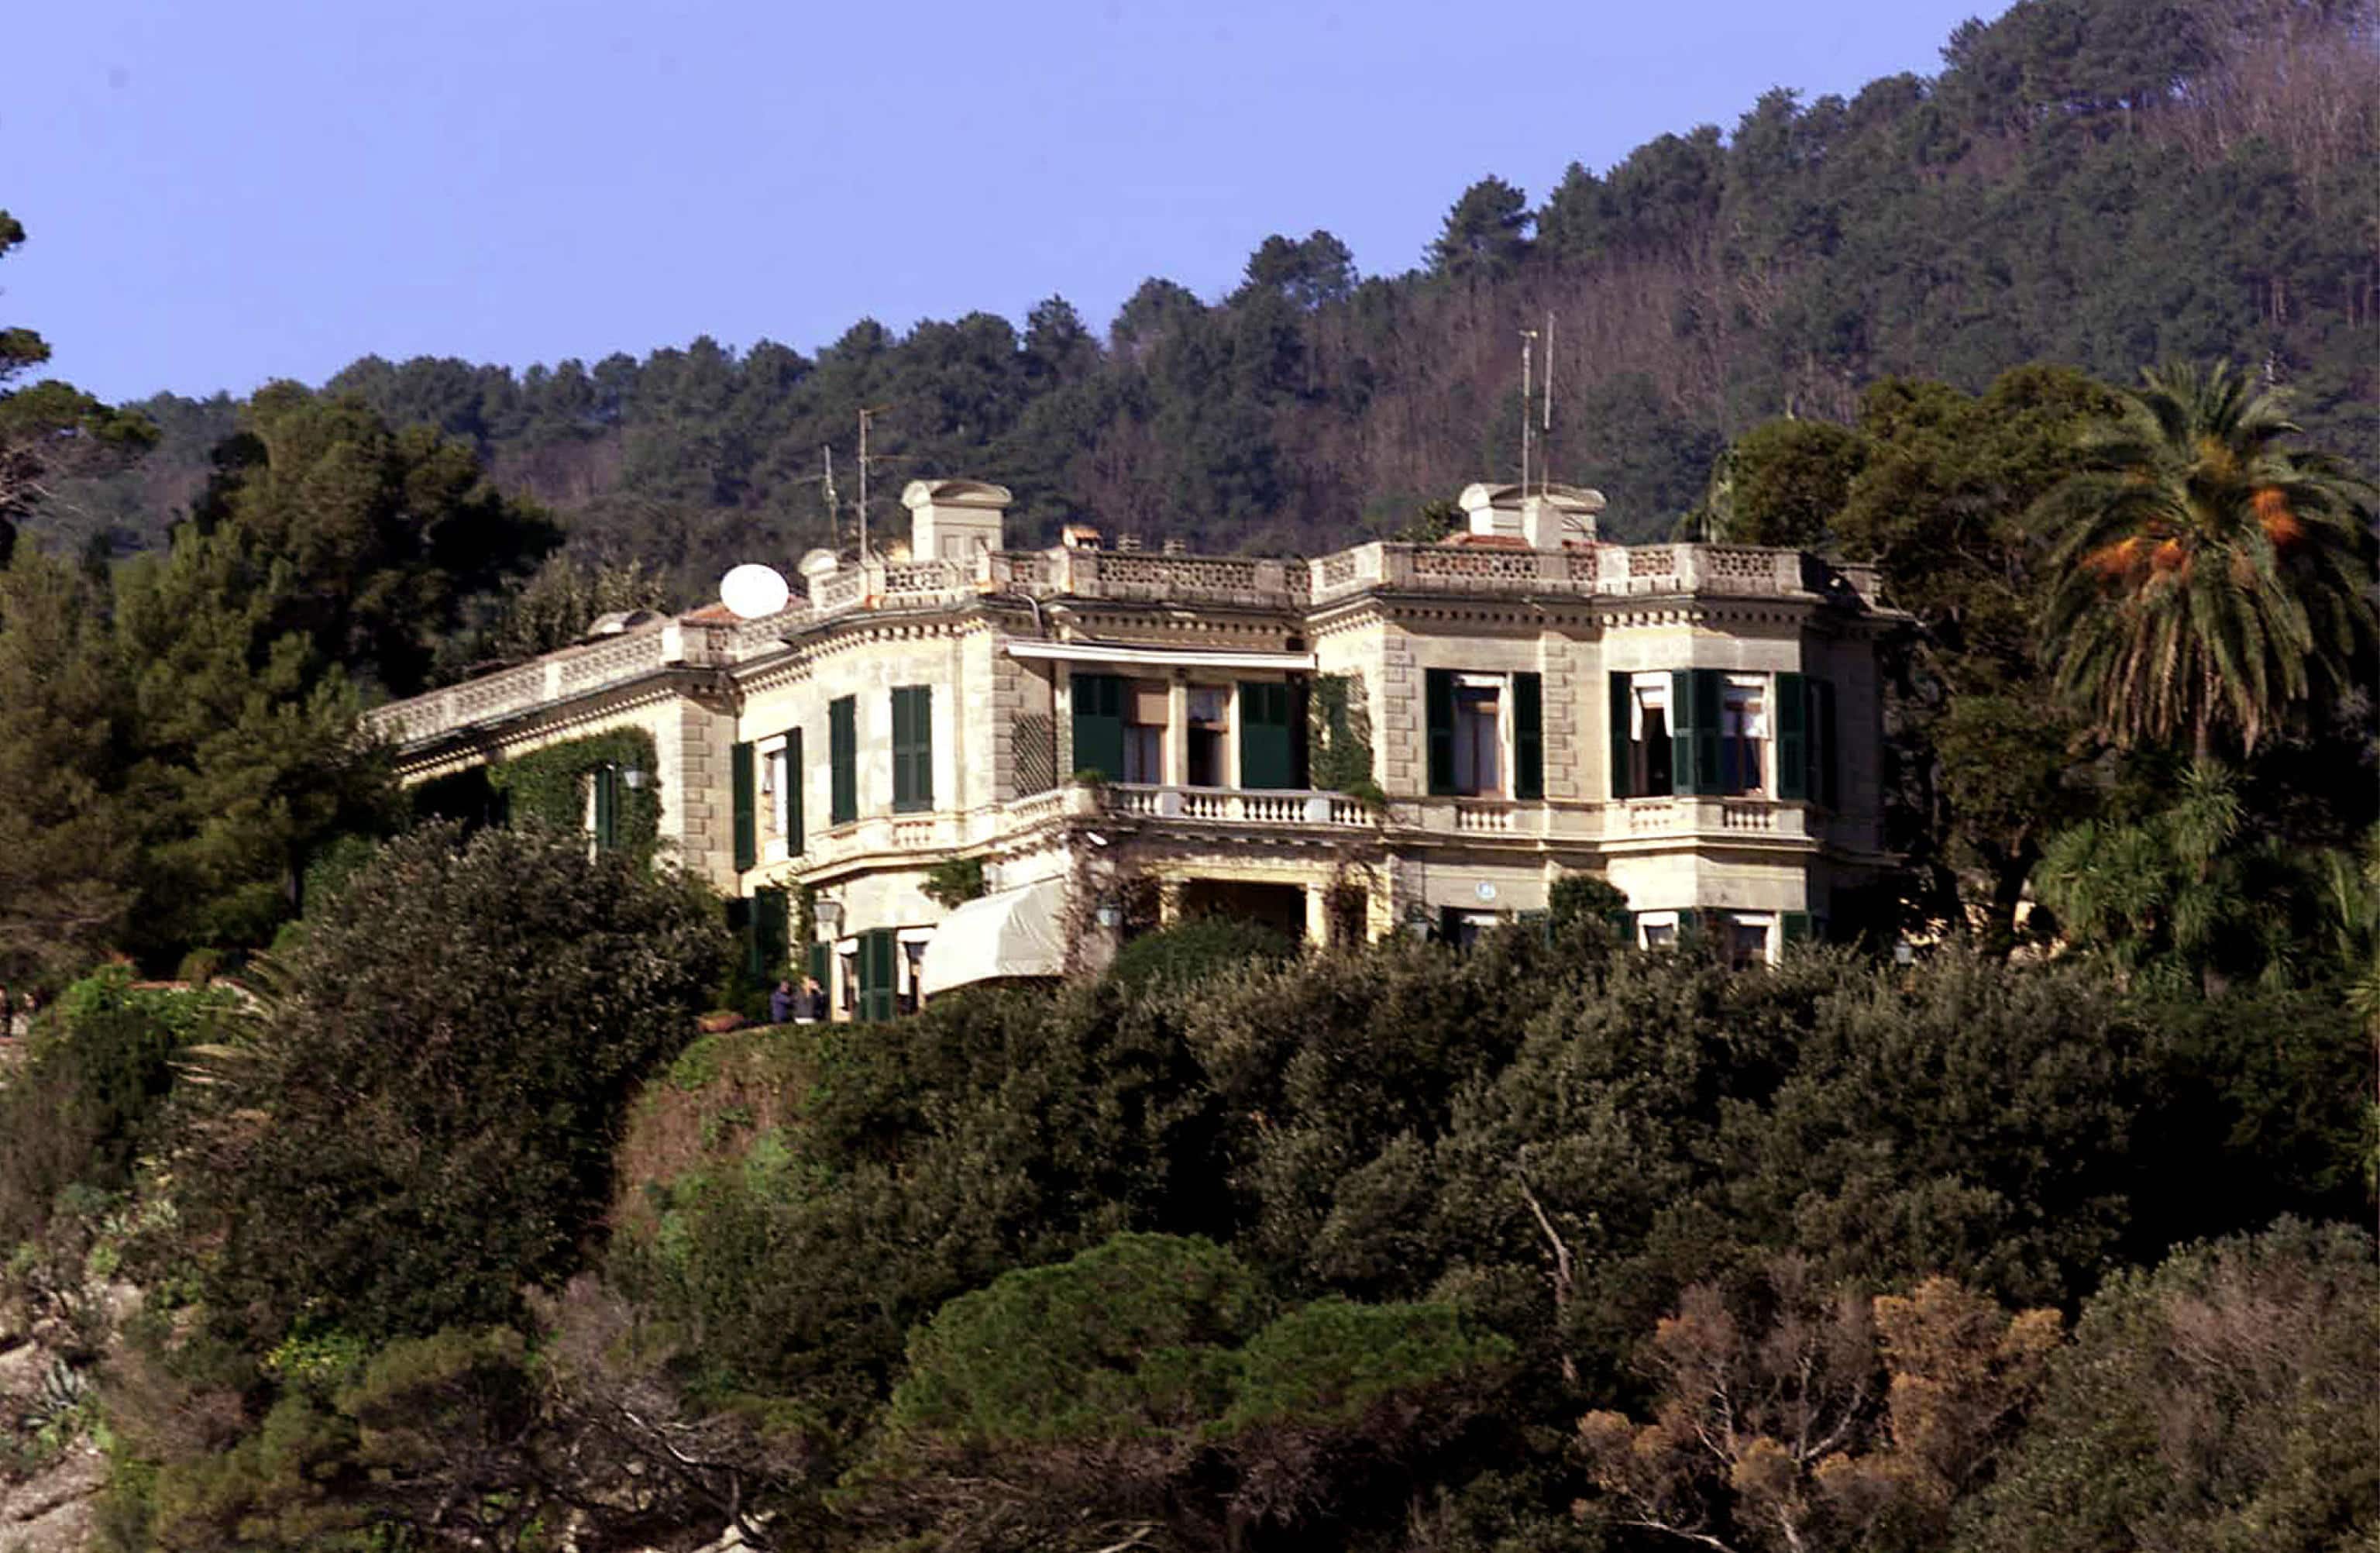 Villa Altachiara, a Portofino, in un'immagine d'archivio: e' la dimora che fu della contessa Vacca Agusta, morta tra le onde dopo essere scivolata dalla scogliera.
ANSA / LUCA ZENNARO